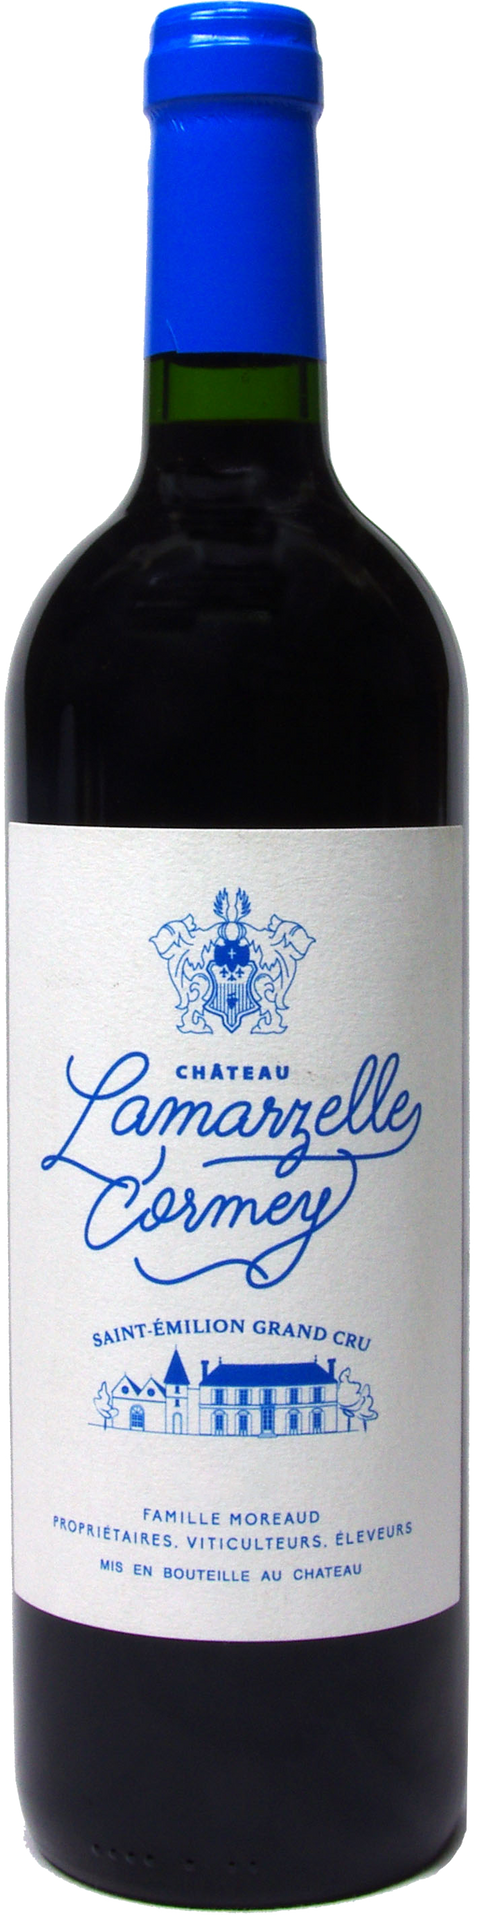 Chateau Lamarzelle Cormey---2018---Rouge---Château Lamarzelle Cormey---0.75